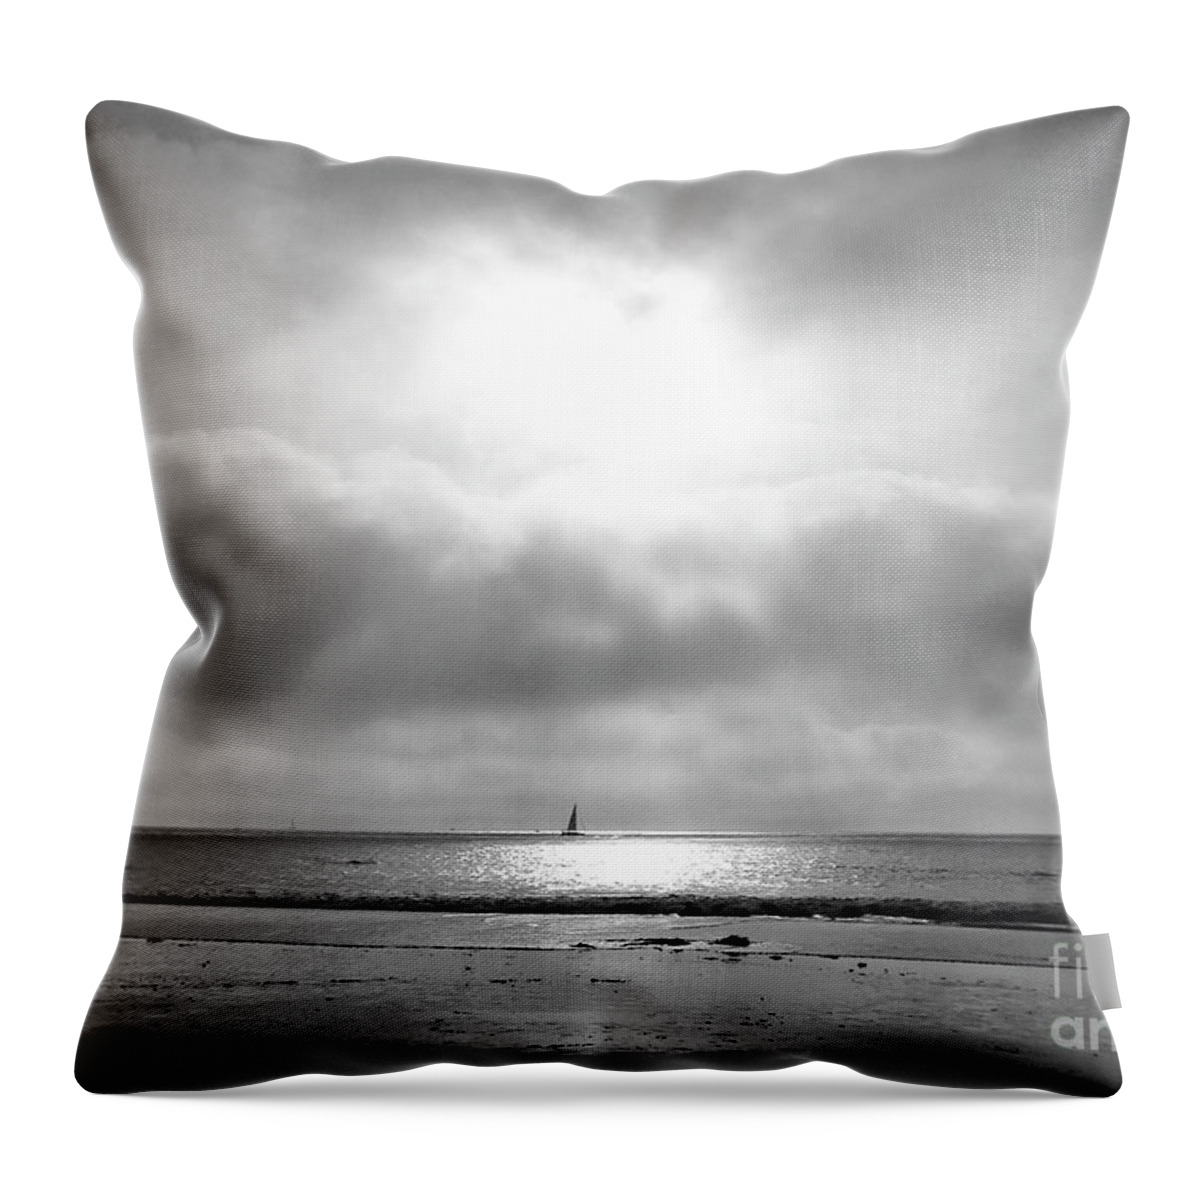 Ocean Throw Pillow featuring the photograph Sail Away by Suzette Kallen